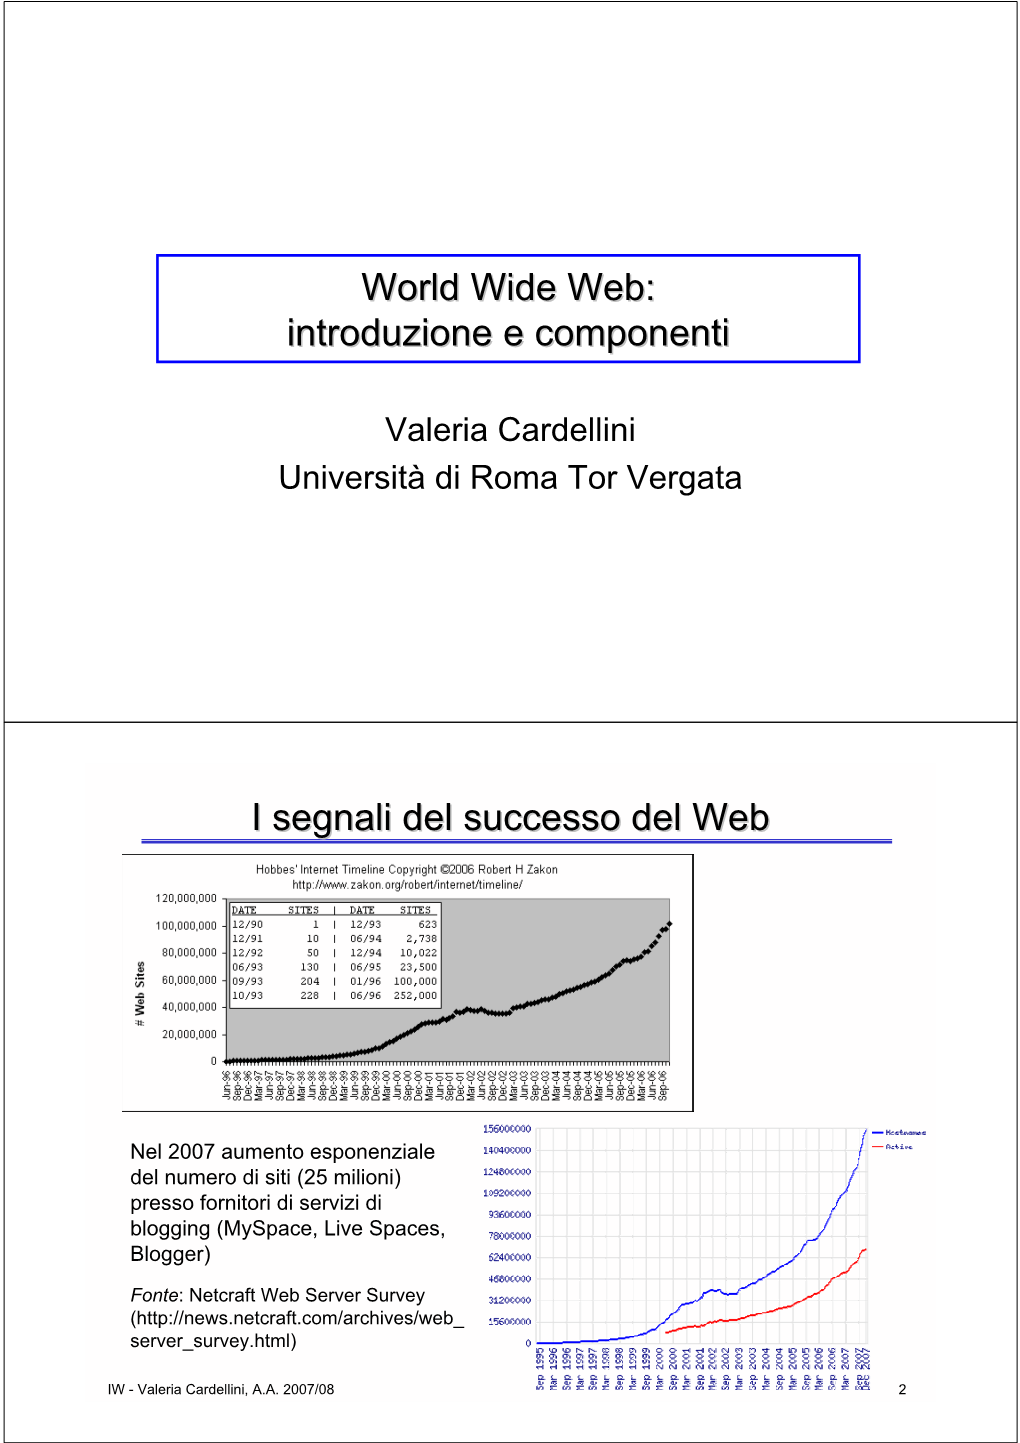 World Wide Web: Introduzione E Componenti